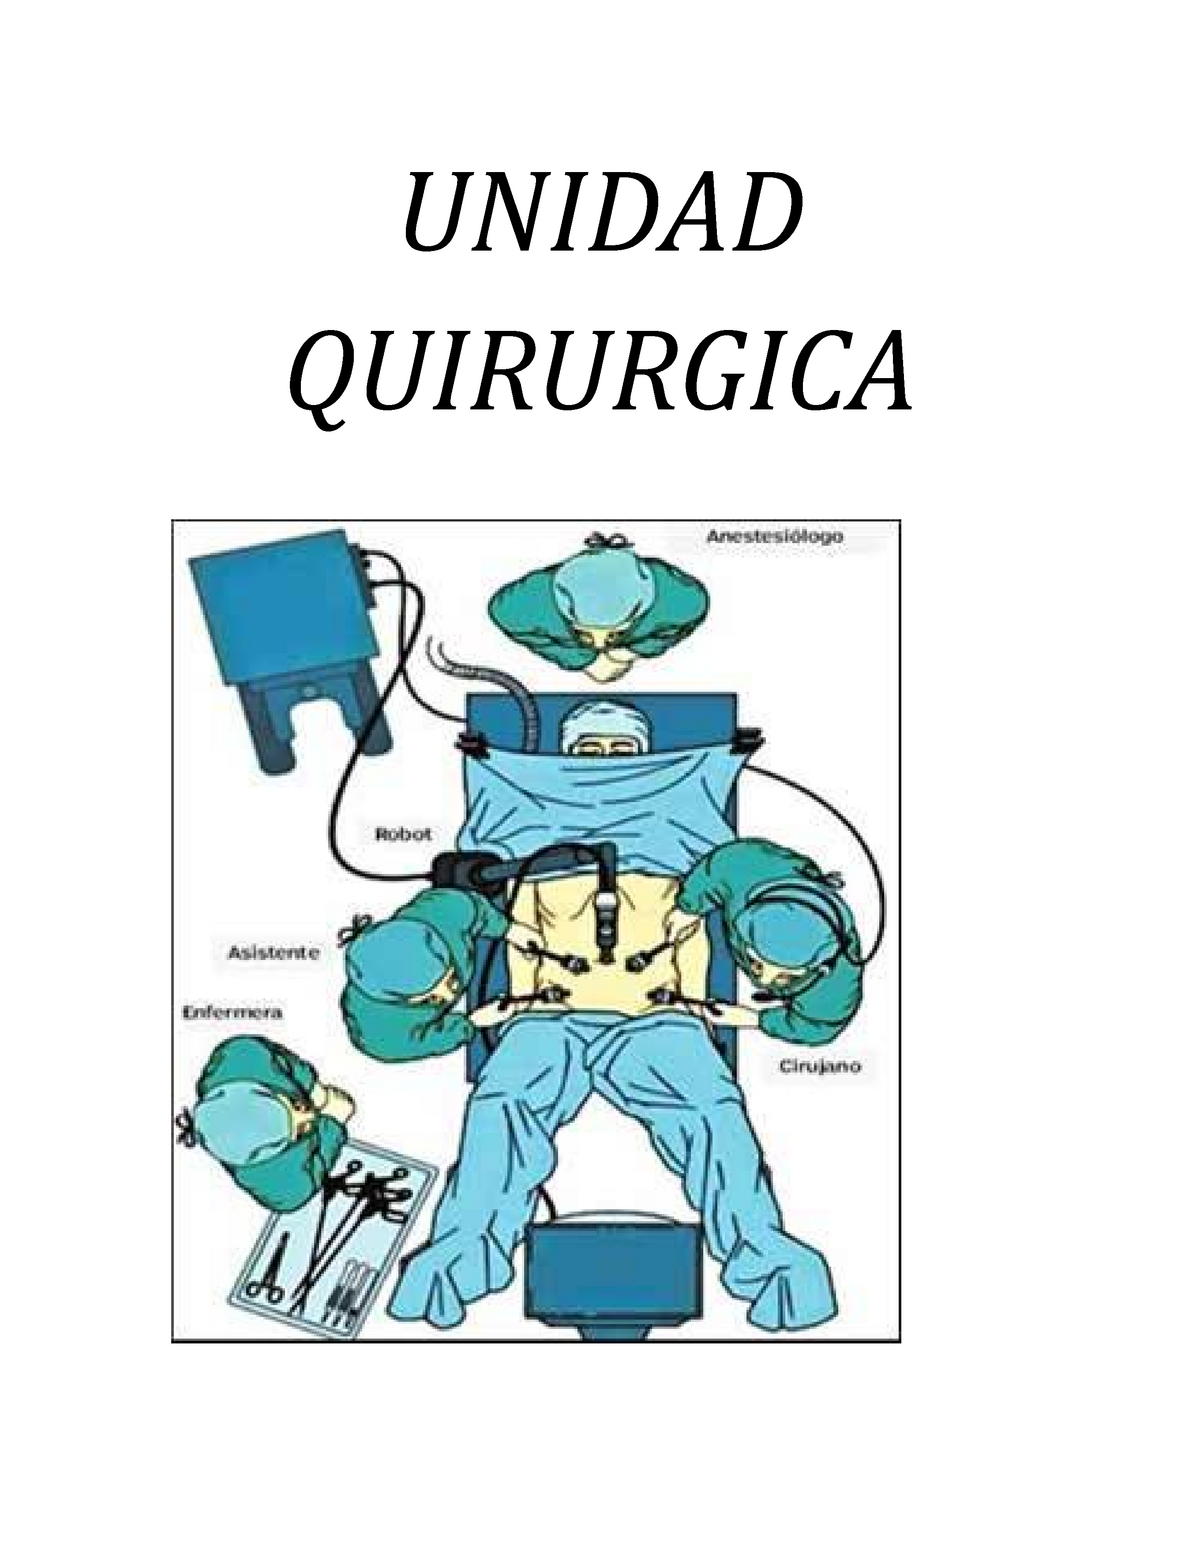 Unidad-Quirurgica - Resumen Cirugia - UNIDAD QUIRURGICA CONCEPTO DE UNIDAD  Conjunto de sala de - Studocu